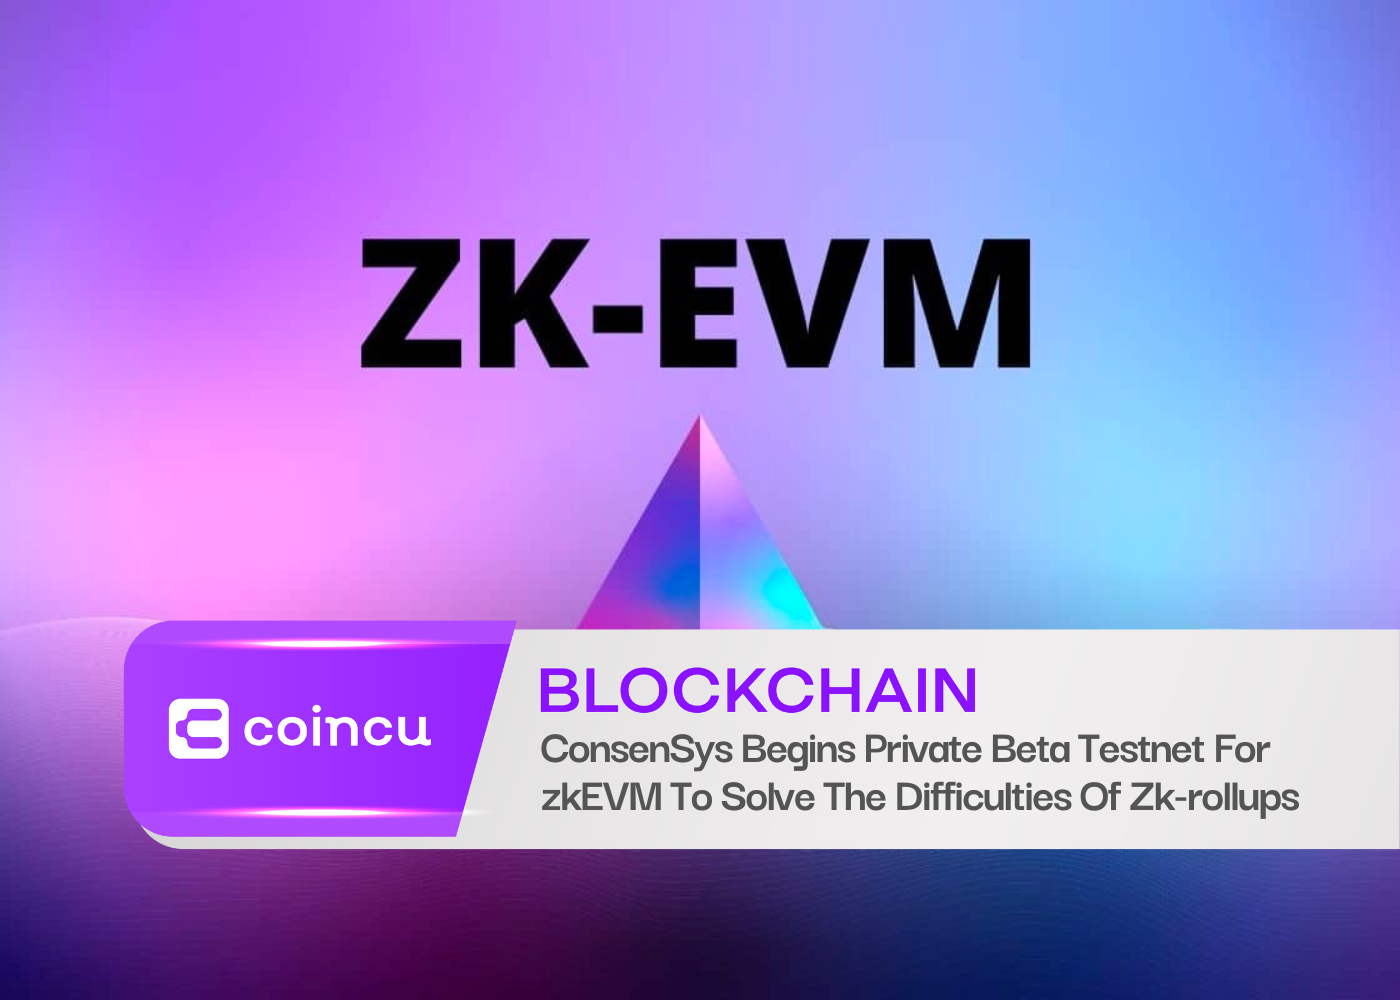 ConsenSys 开始针对 zkEVM 进行私人 Beta 测试网，以解决 Zk-rollups 的困难